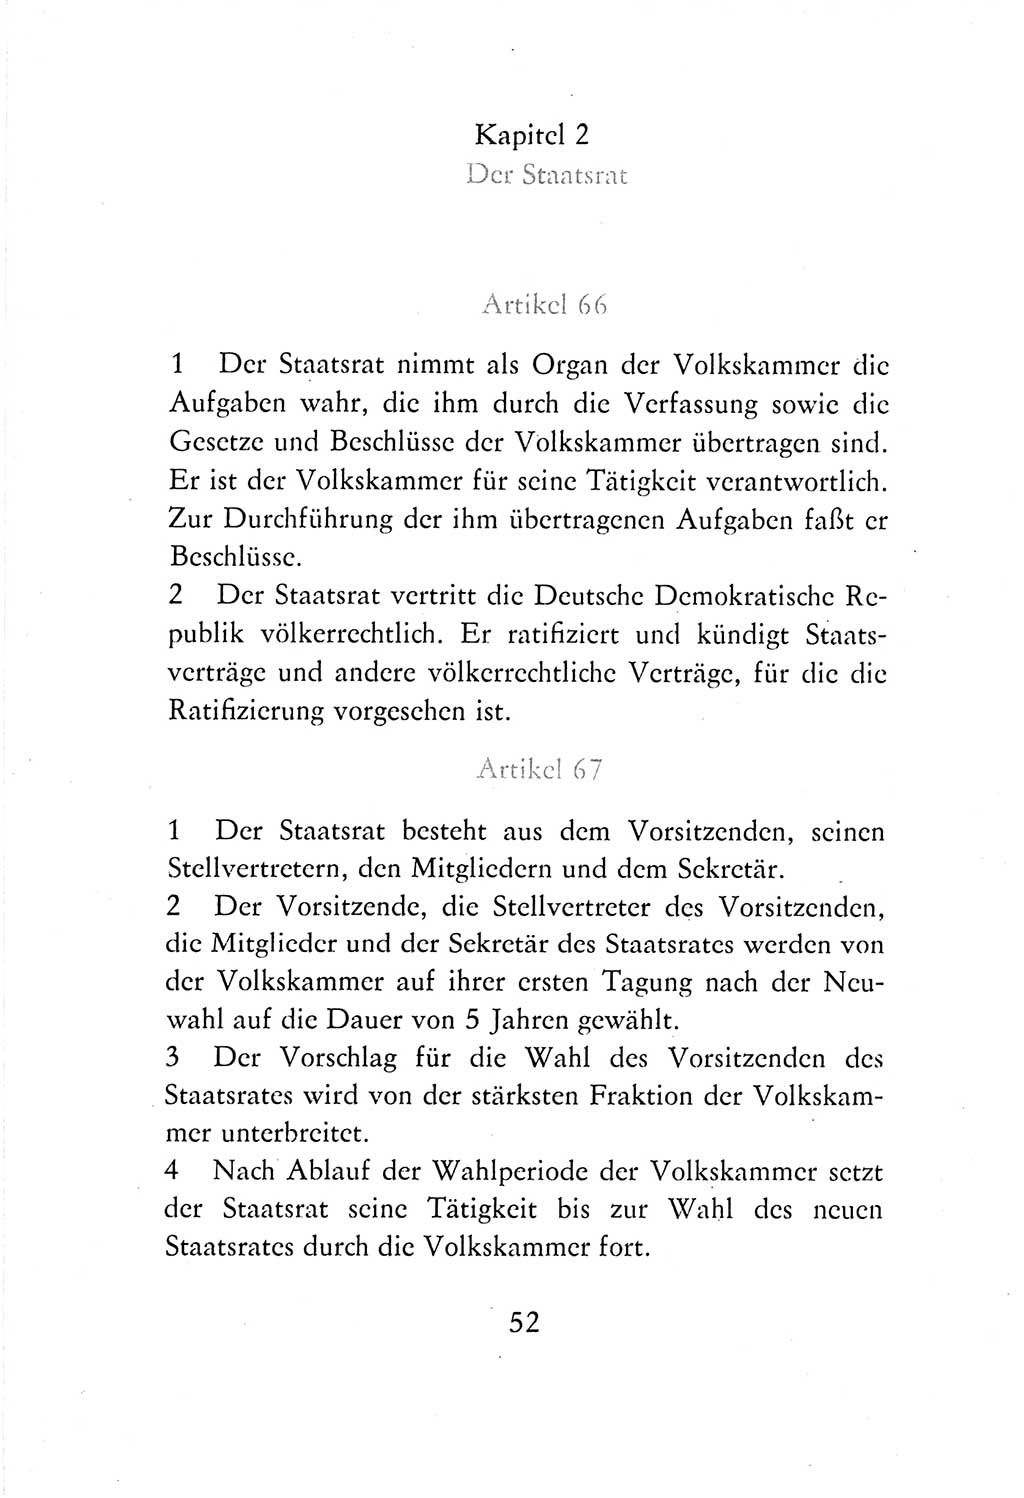 Verfassung der Deutschen Demokratischen Republik (DDR) vom 7. Oktober 1974, Seite 52 (Verf. DDR 1974, S. 52)